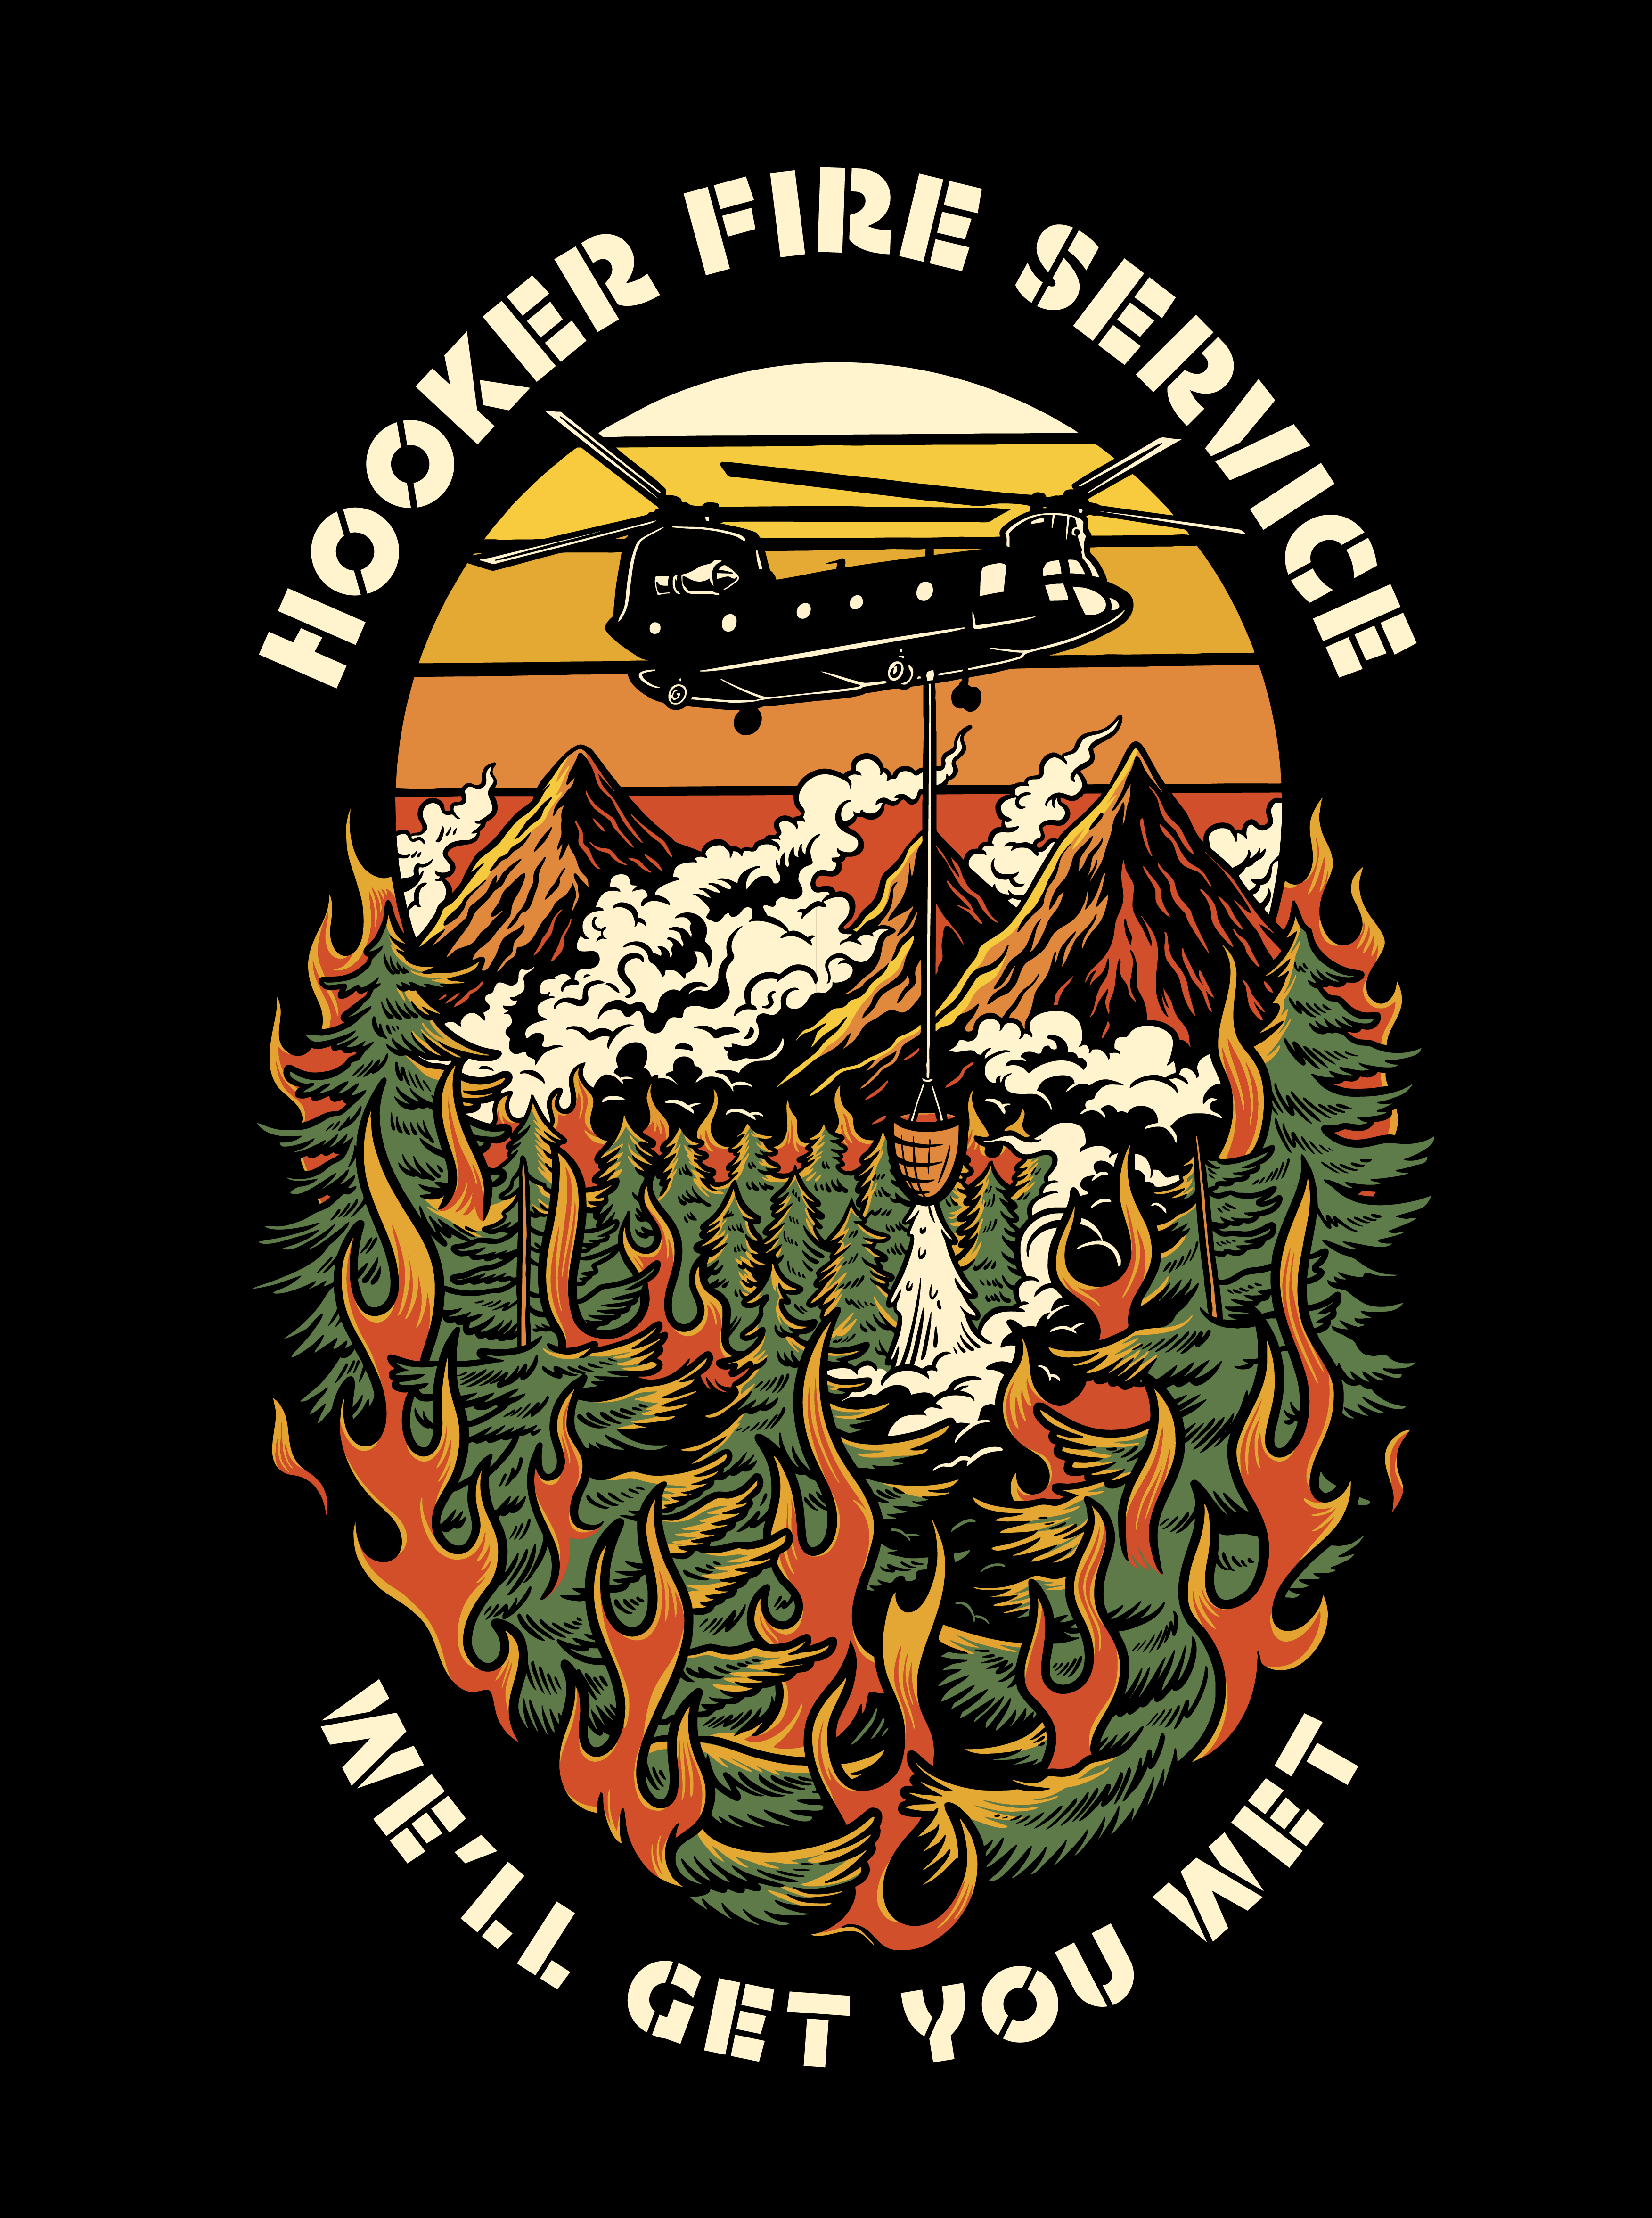 Hooker Fire Service Flag